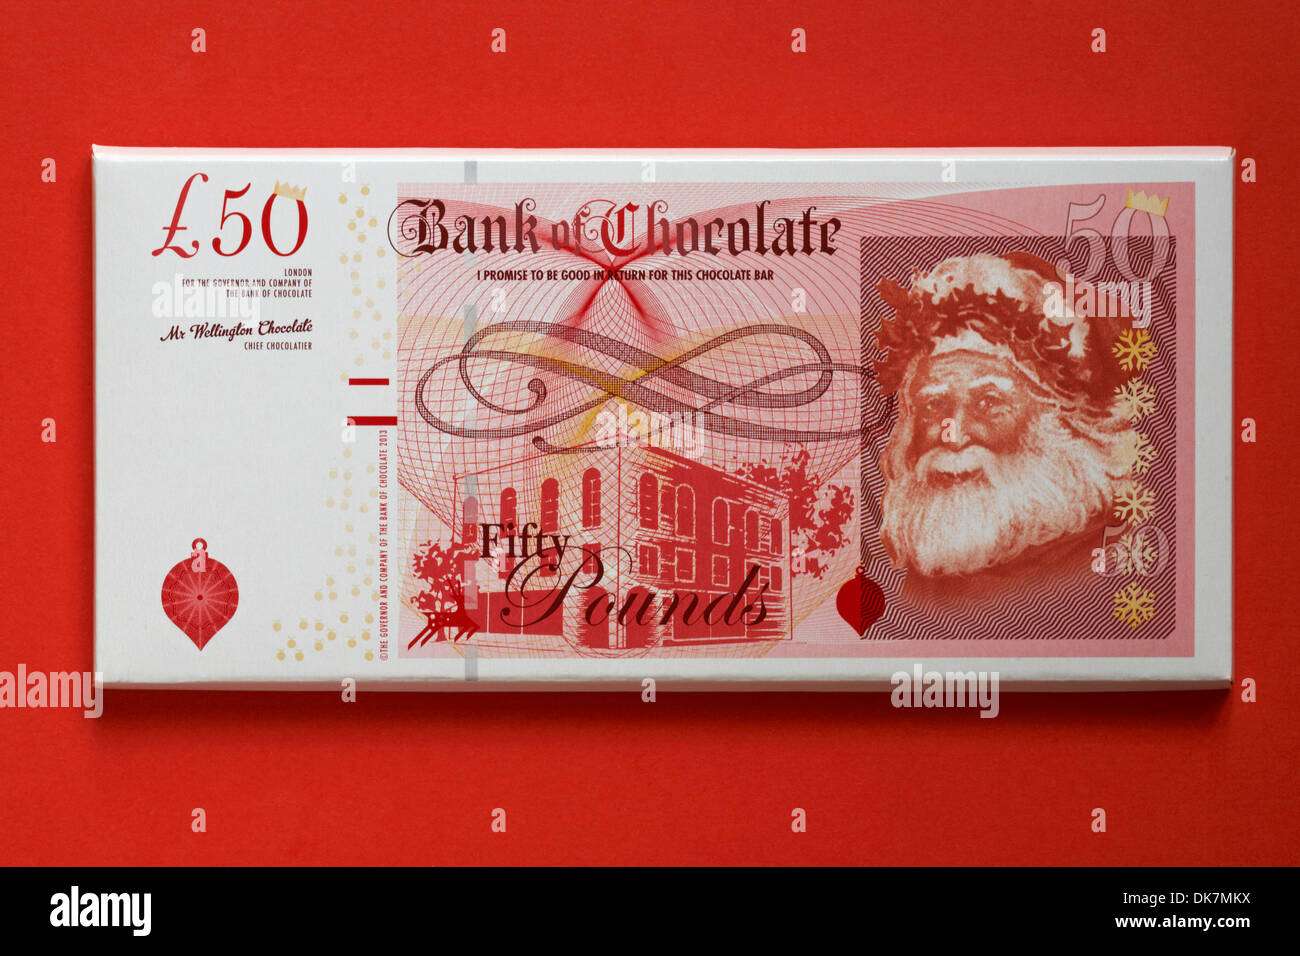 Barre de chocolat - £50 Banque du chocolat je promets d'être bon en retour de ce chocolat isolé sur fond rouge Banque D'Images